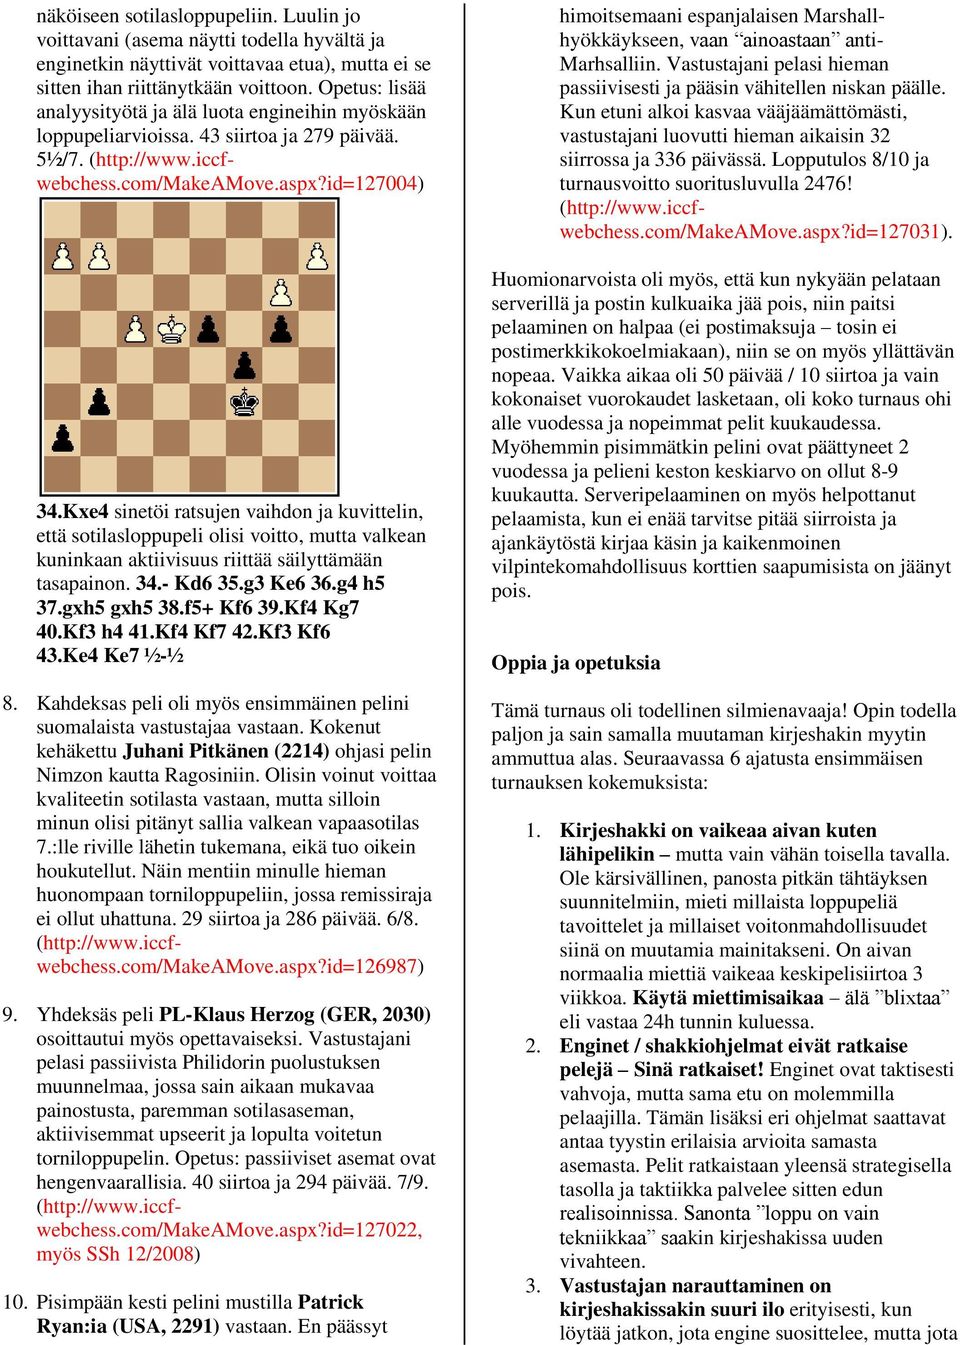 Kxe4 sinetöi ratsujen vaihdon ja kuvittelin, että sotilasloppupeli olisi voitto, mutta valkean kuninkaan aktiivisuus riittää säilyttämään tasapainon. 34.- Kd6 35.g3 Ke6 36.g4 h5 37.gxh5 gxh5 38.